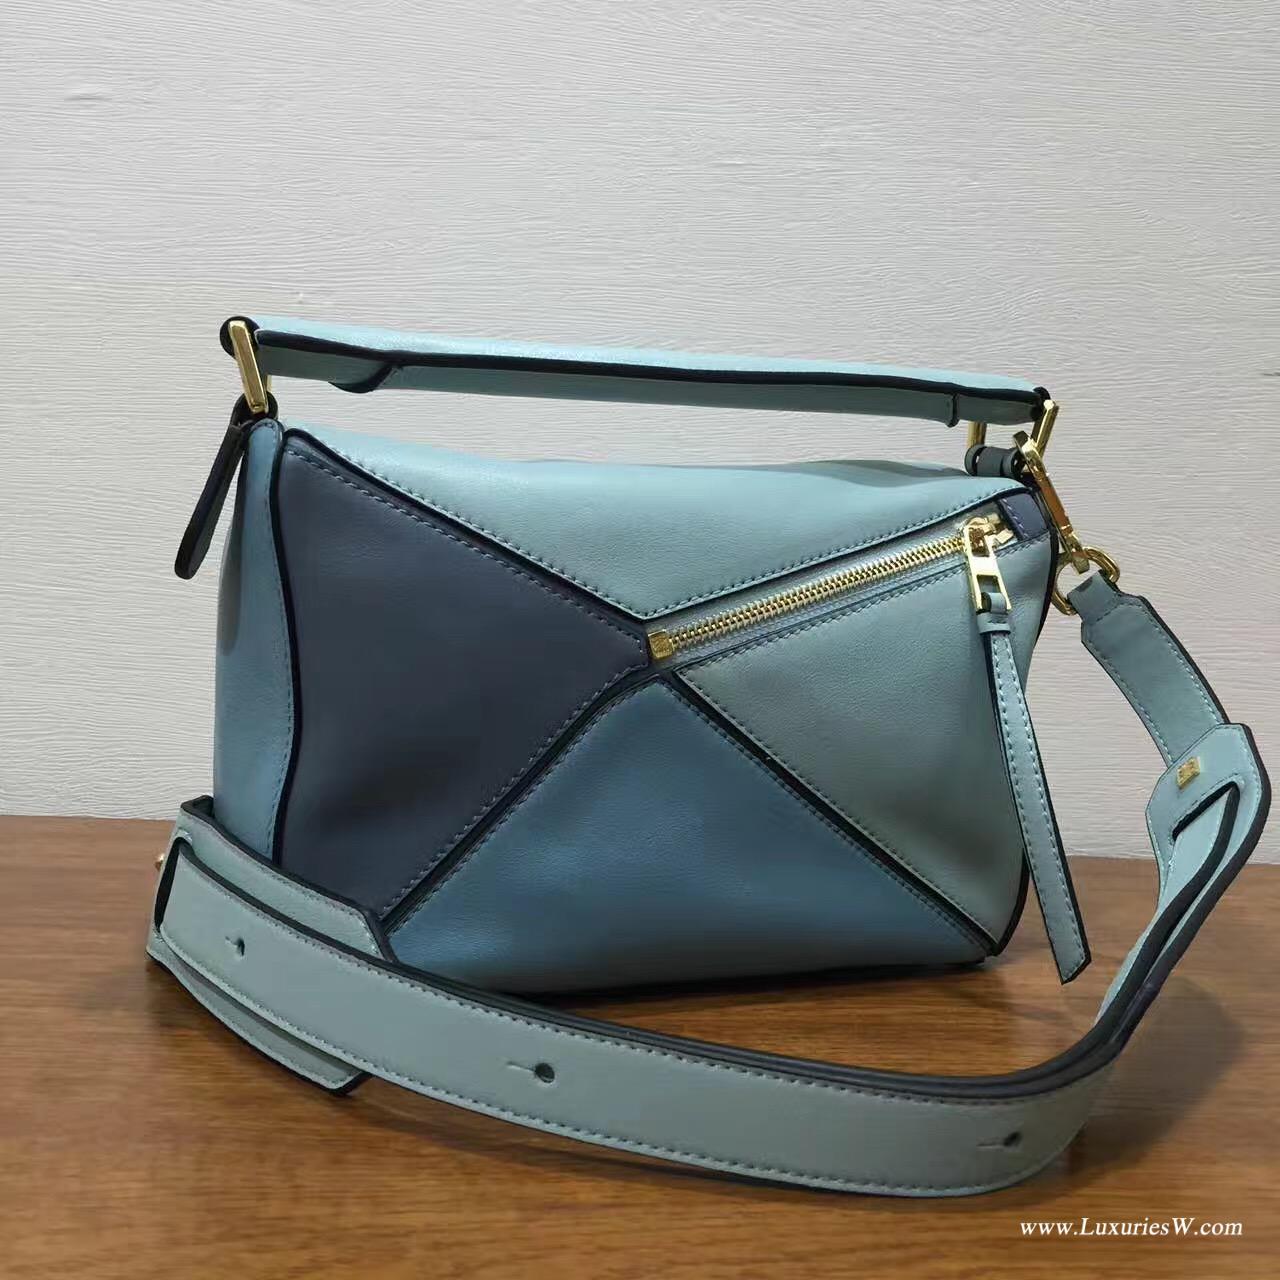 羅意威LOEWE包包 Mini Puzzle Bag 浅蓝色拼色 長方體形狀 折疊幾何包